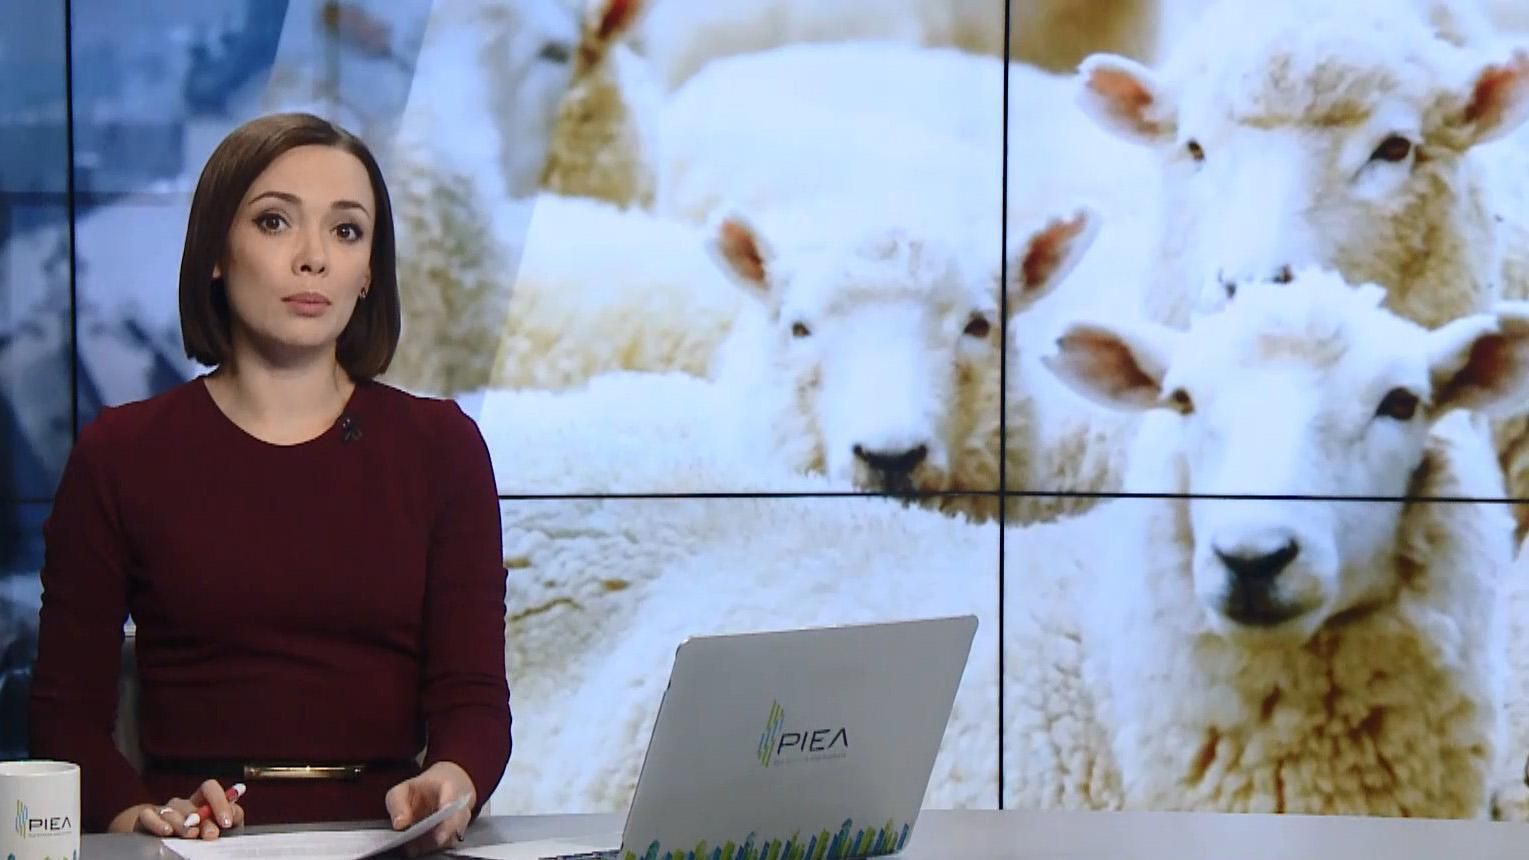 Випуск новин за 17:00: Порятунок овець на Одещині. Вбивство журналіста Хашоггі